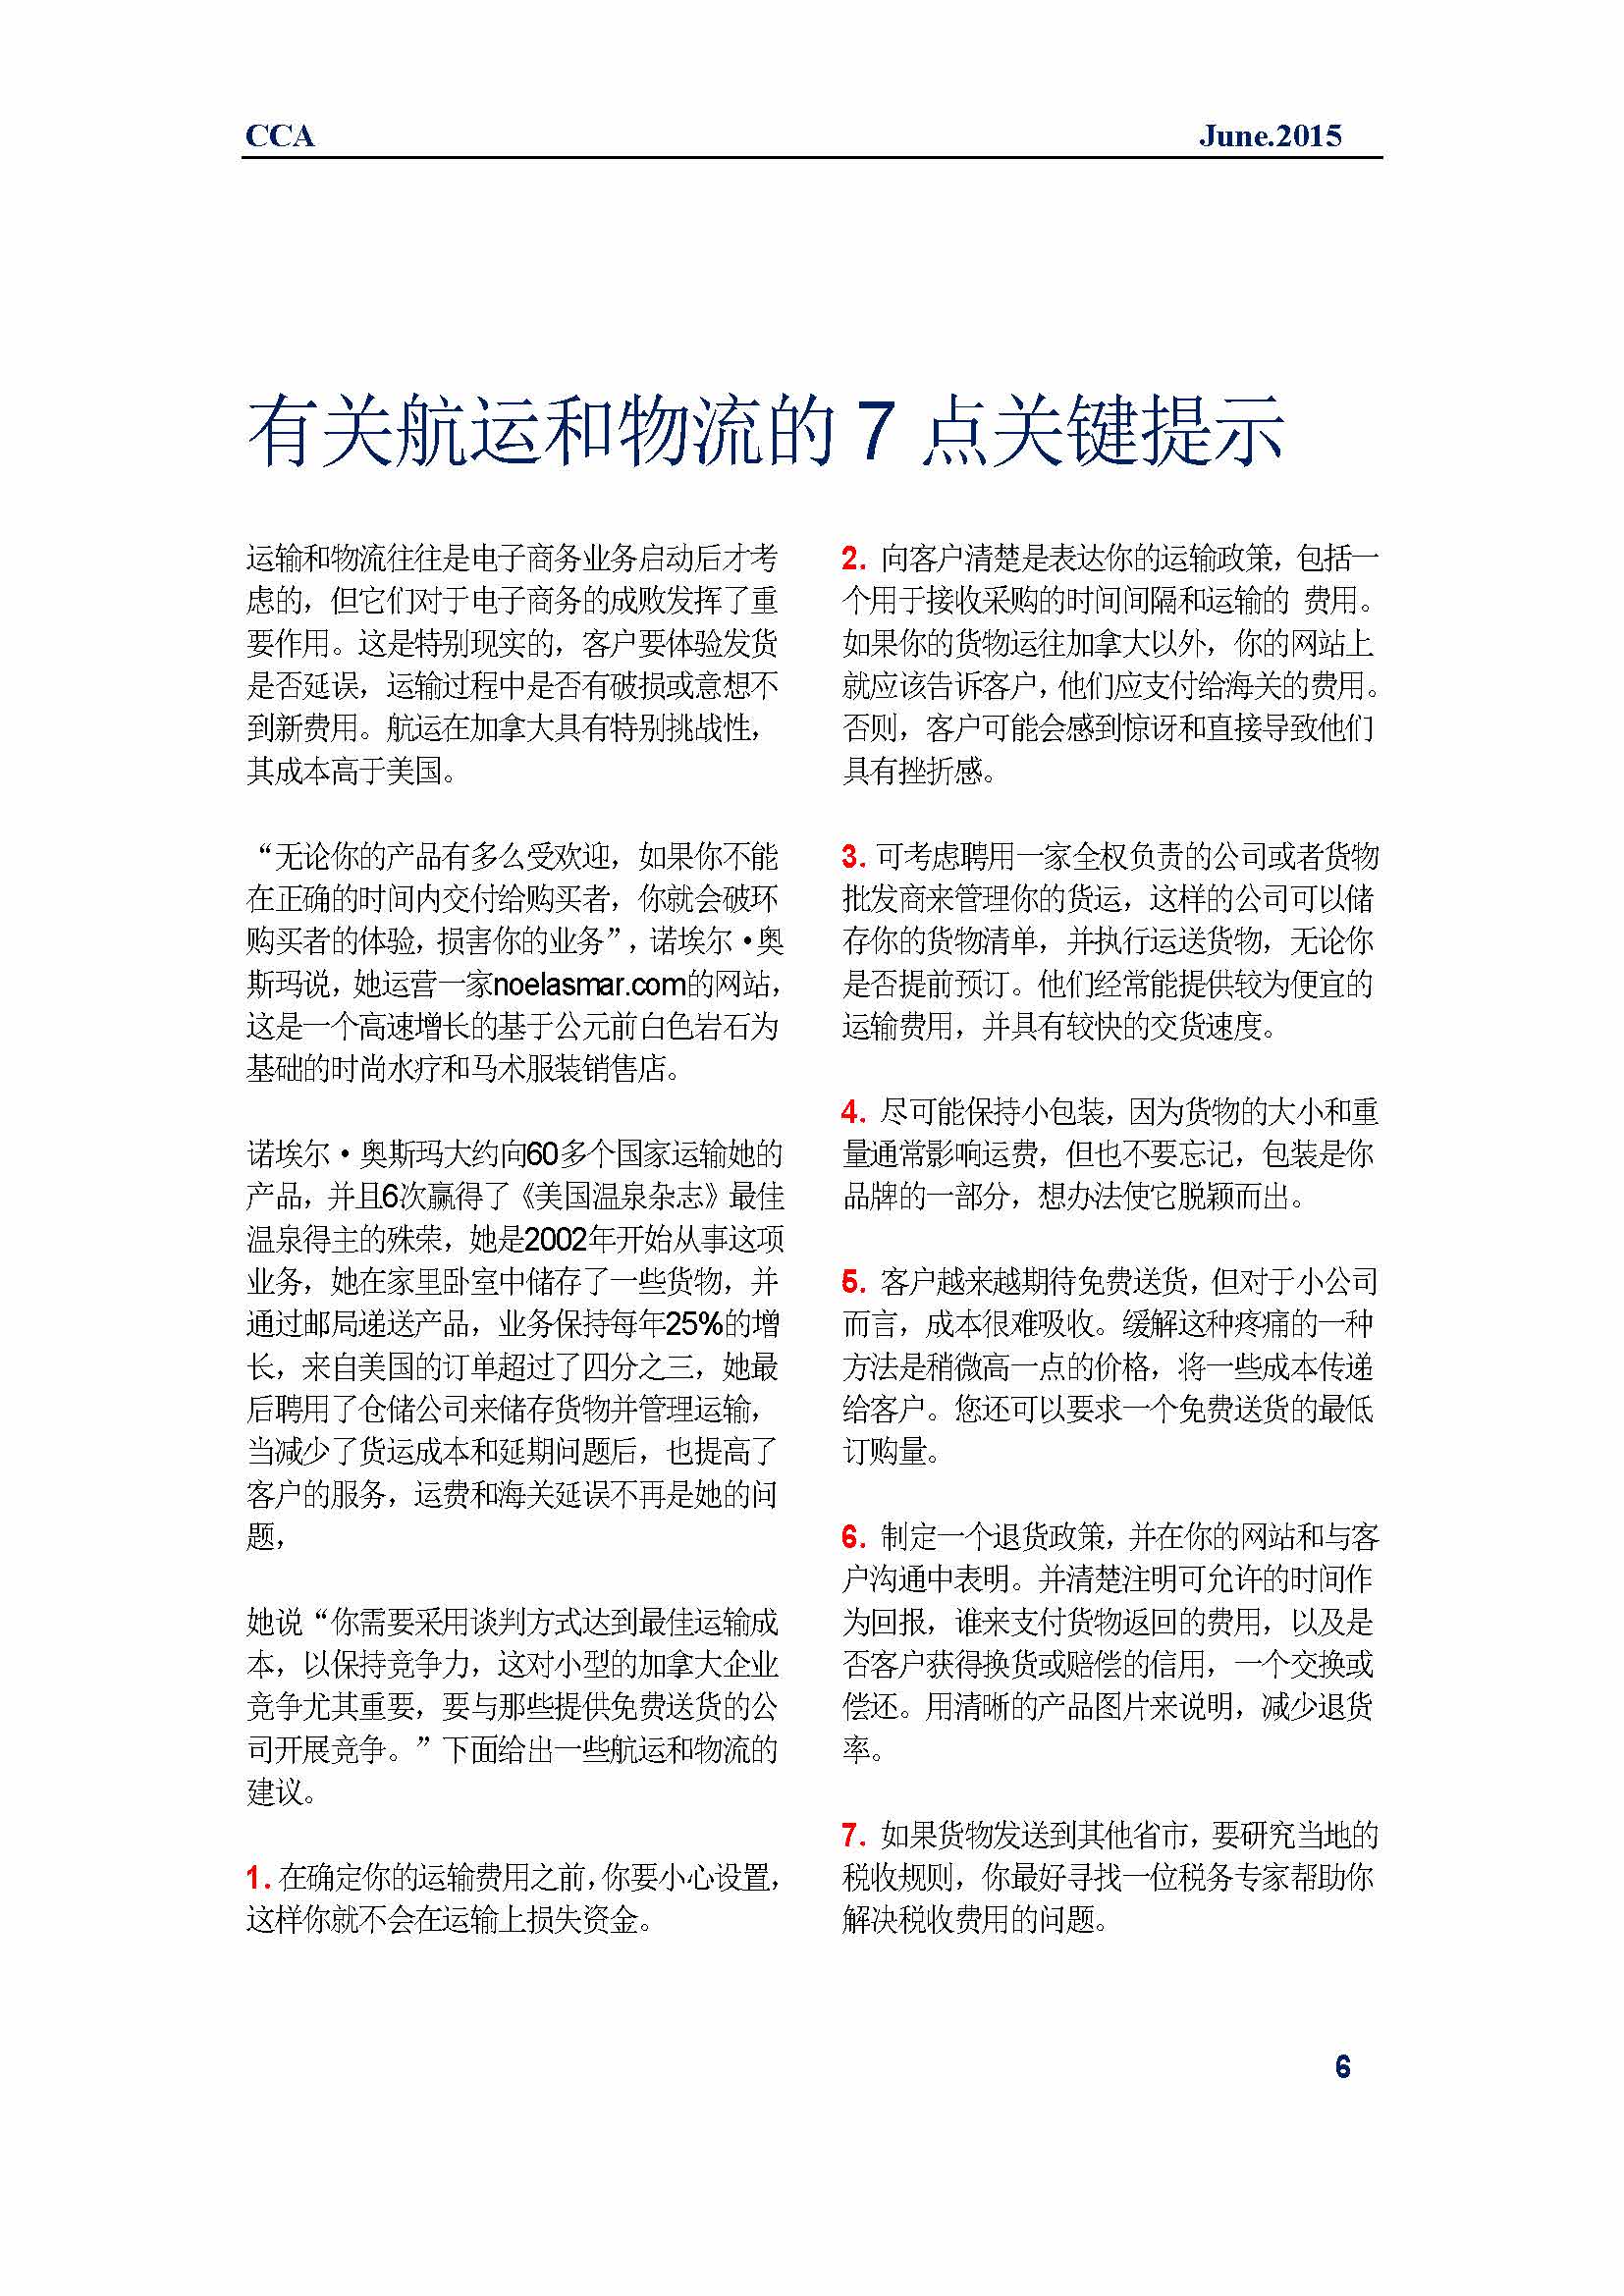 中国科技咨询协会国际快讯（第二十四期）_页面_09.jpg